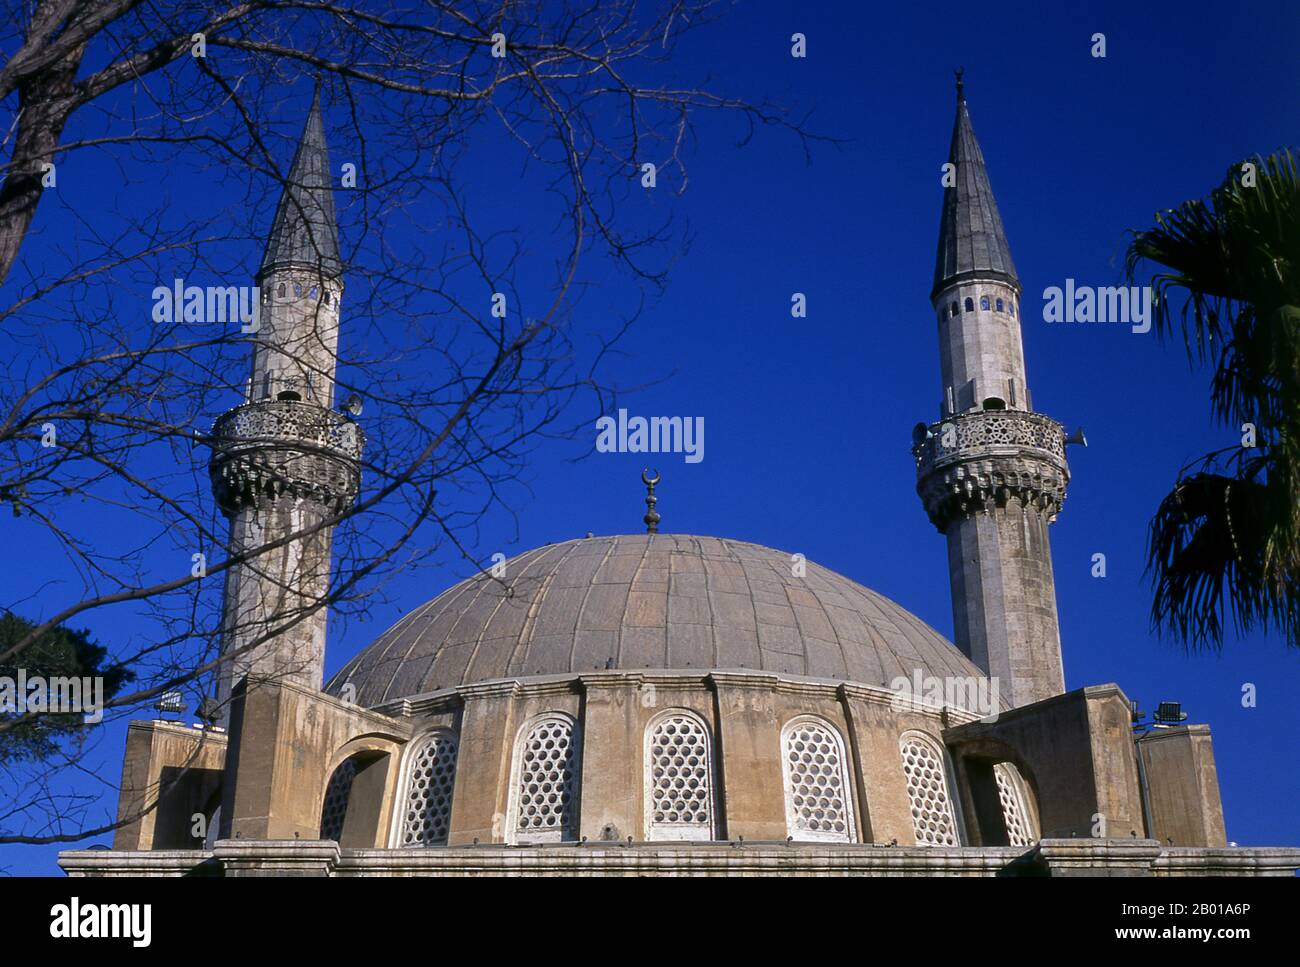 Syrien: Tekkiye Moschee, Damaskus. Die Tekkiye-Moschee (auch Takiyya as-Sulaymaniyyah, Takieh as-Sulaymaniyya) wurde auf Befehl von Suleiman dem Magnificent erbaut und zwischen 1554 und 1560 vom Architekten Mimar Sinan entworfen. Es wurde als "das beste Beispiel der osmanischen Architektur in Damaskus" beschrieben. Stockfoto